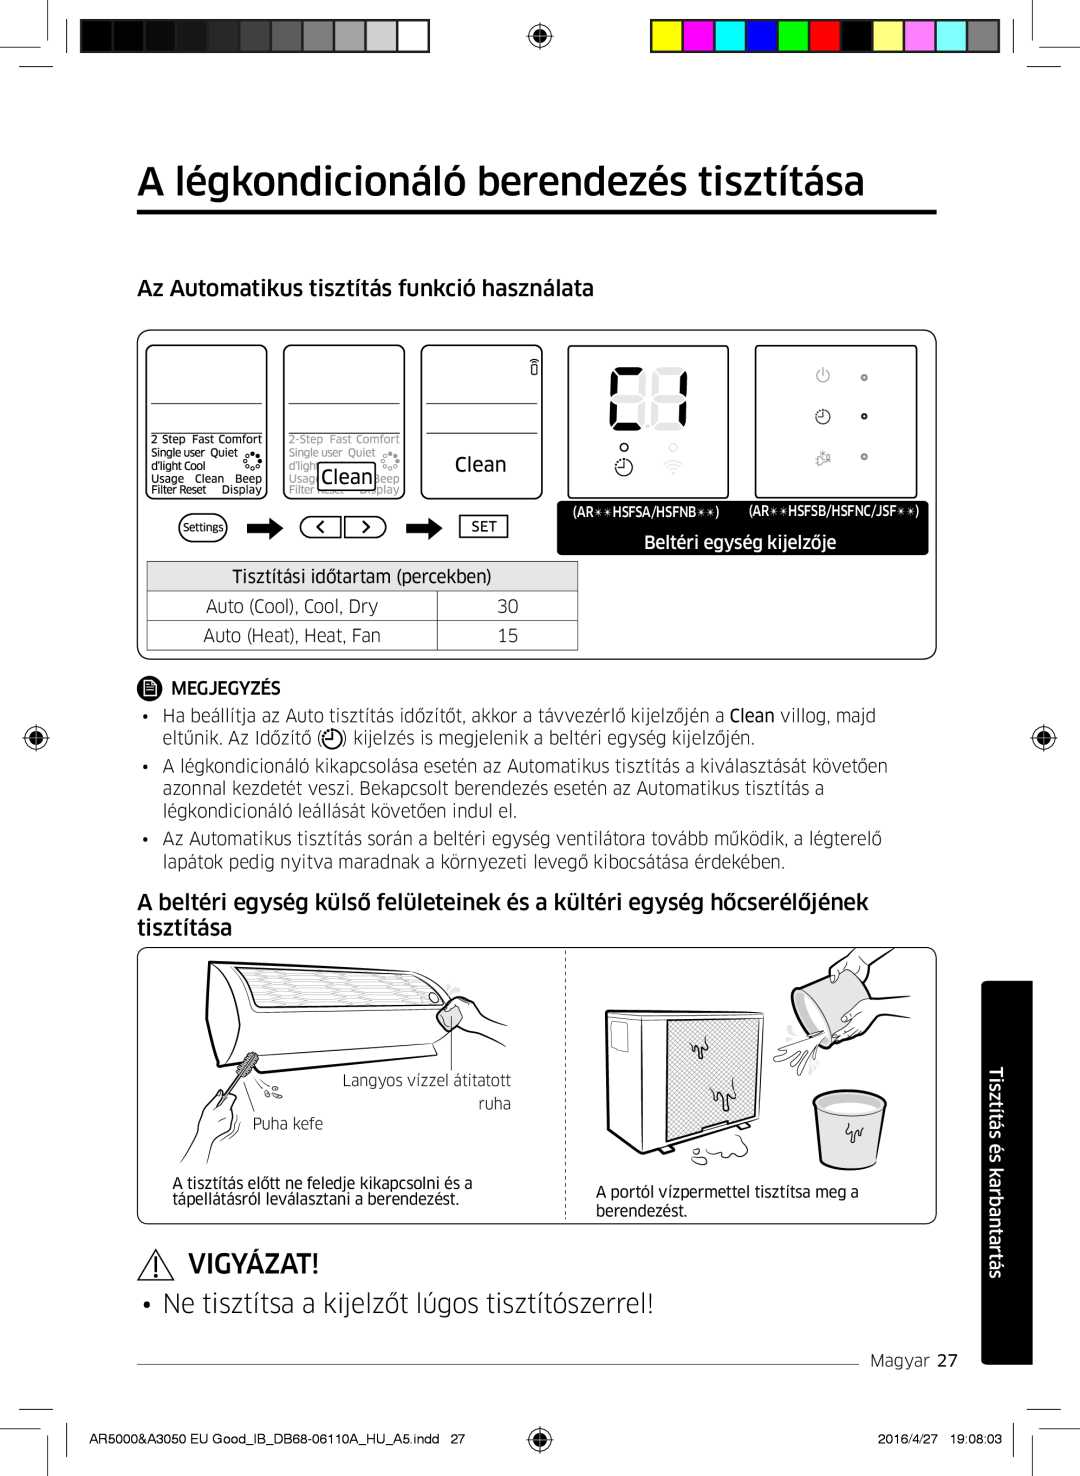 Samsung AR18JSFNCWKNEU A légkondicionáló berendezés tisztítása, Vigyázat, Ne tisztítsa a kijelzőt lúgos tisztítószerrel 